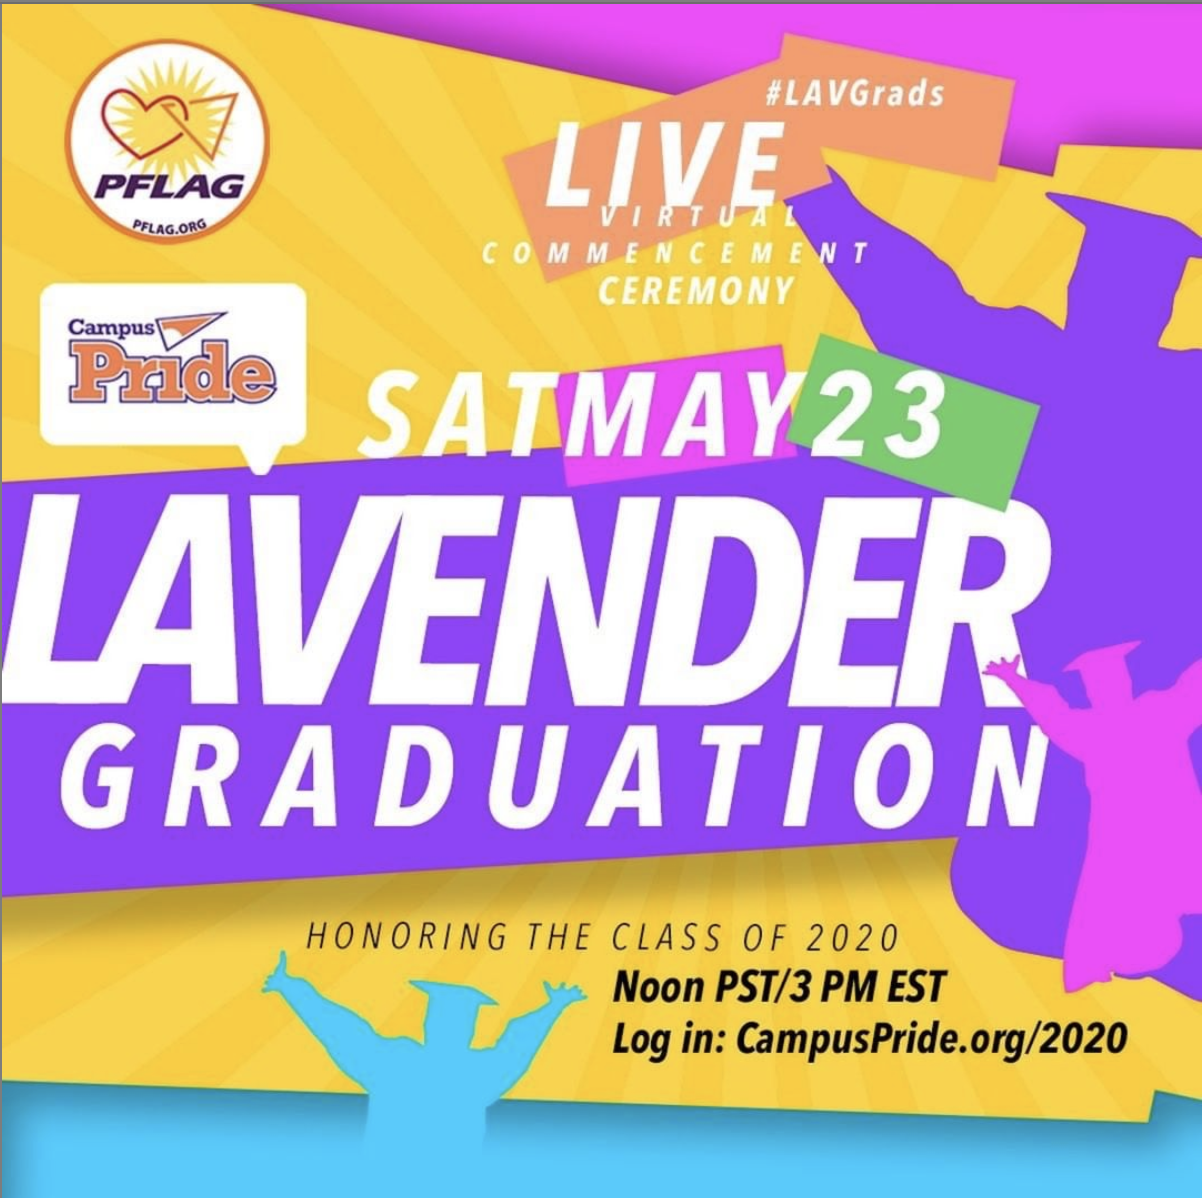 Lavender graduation